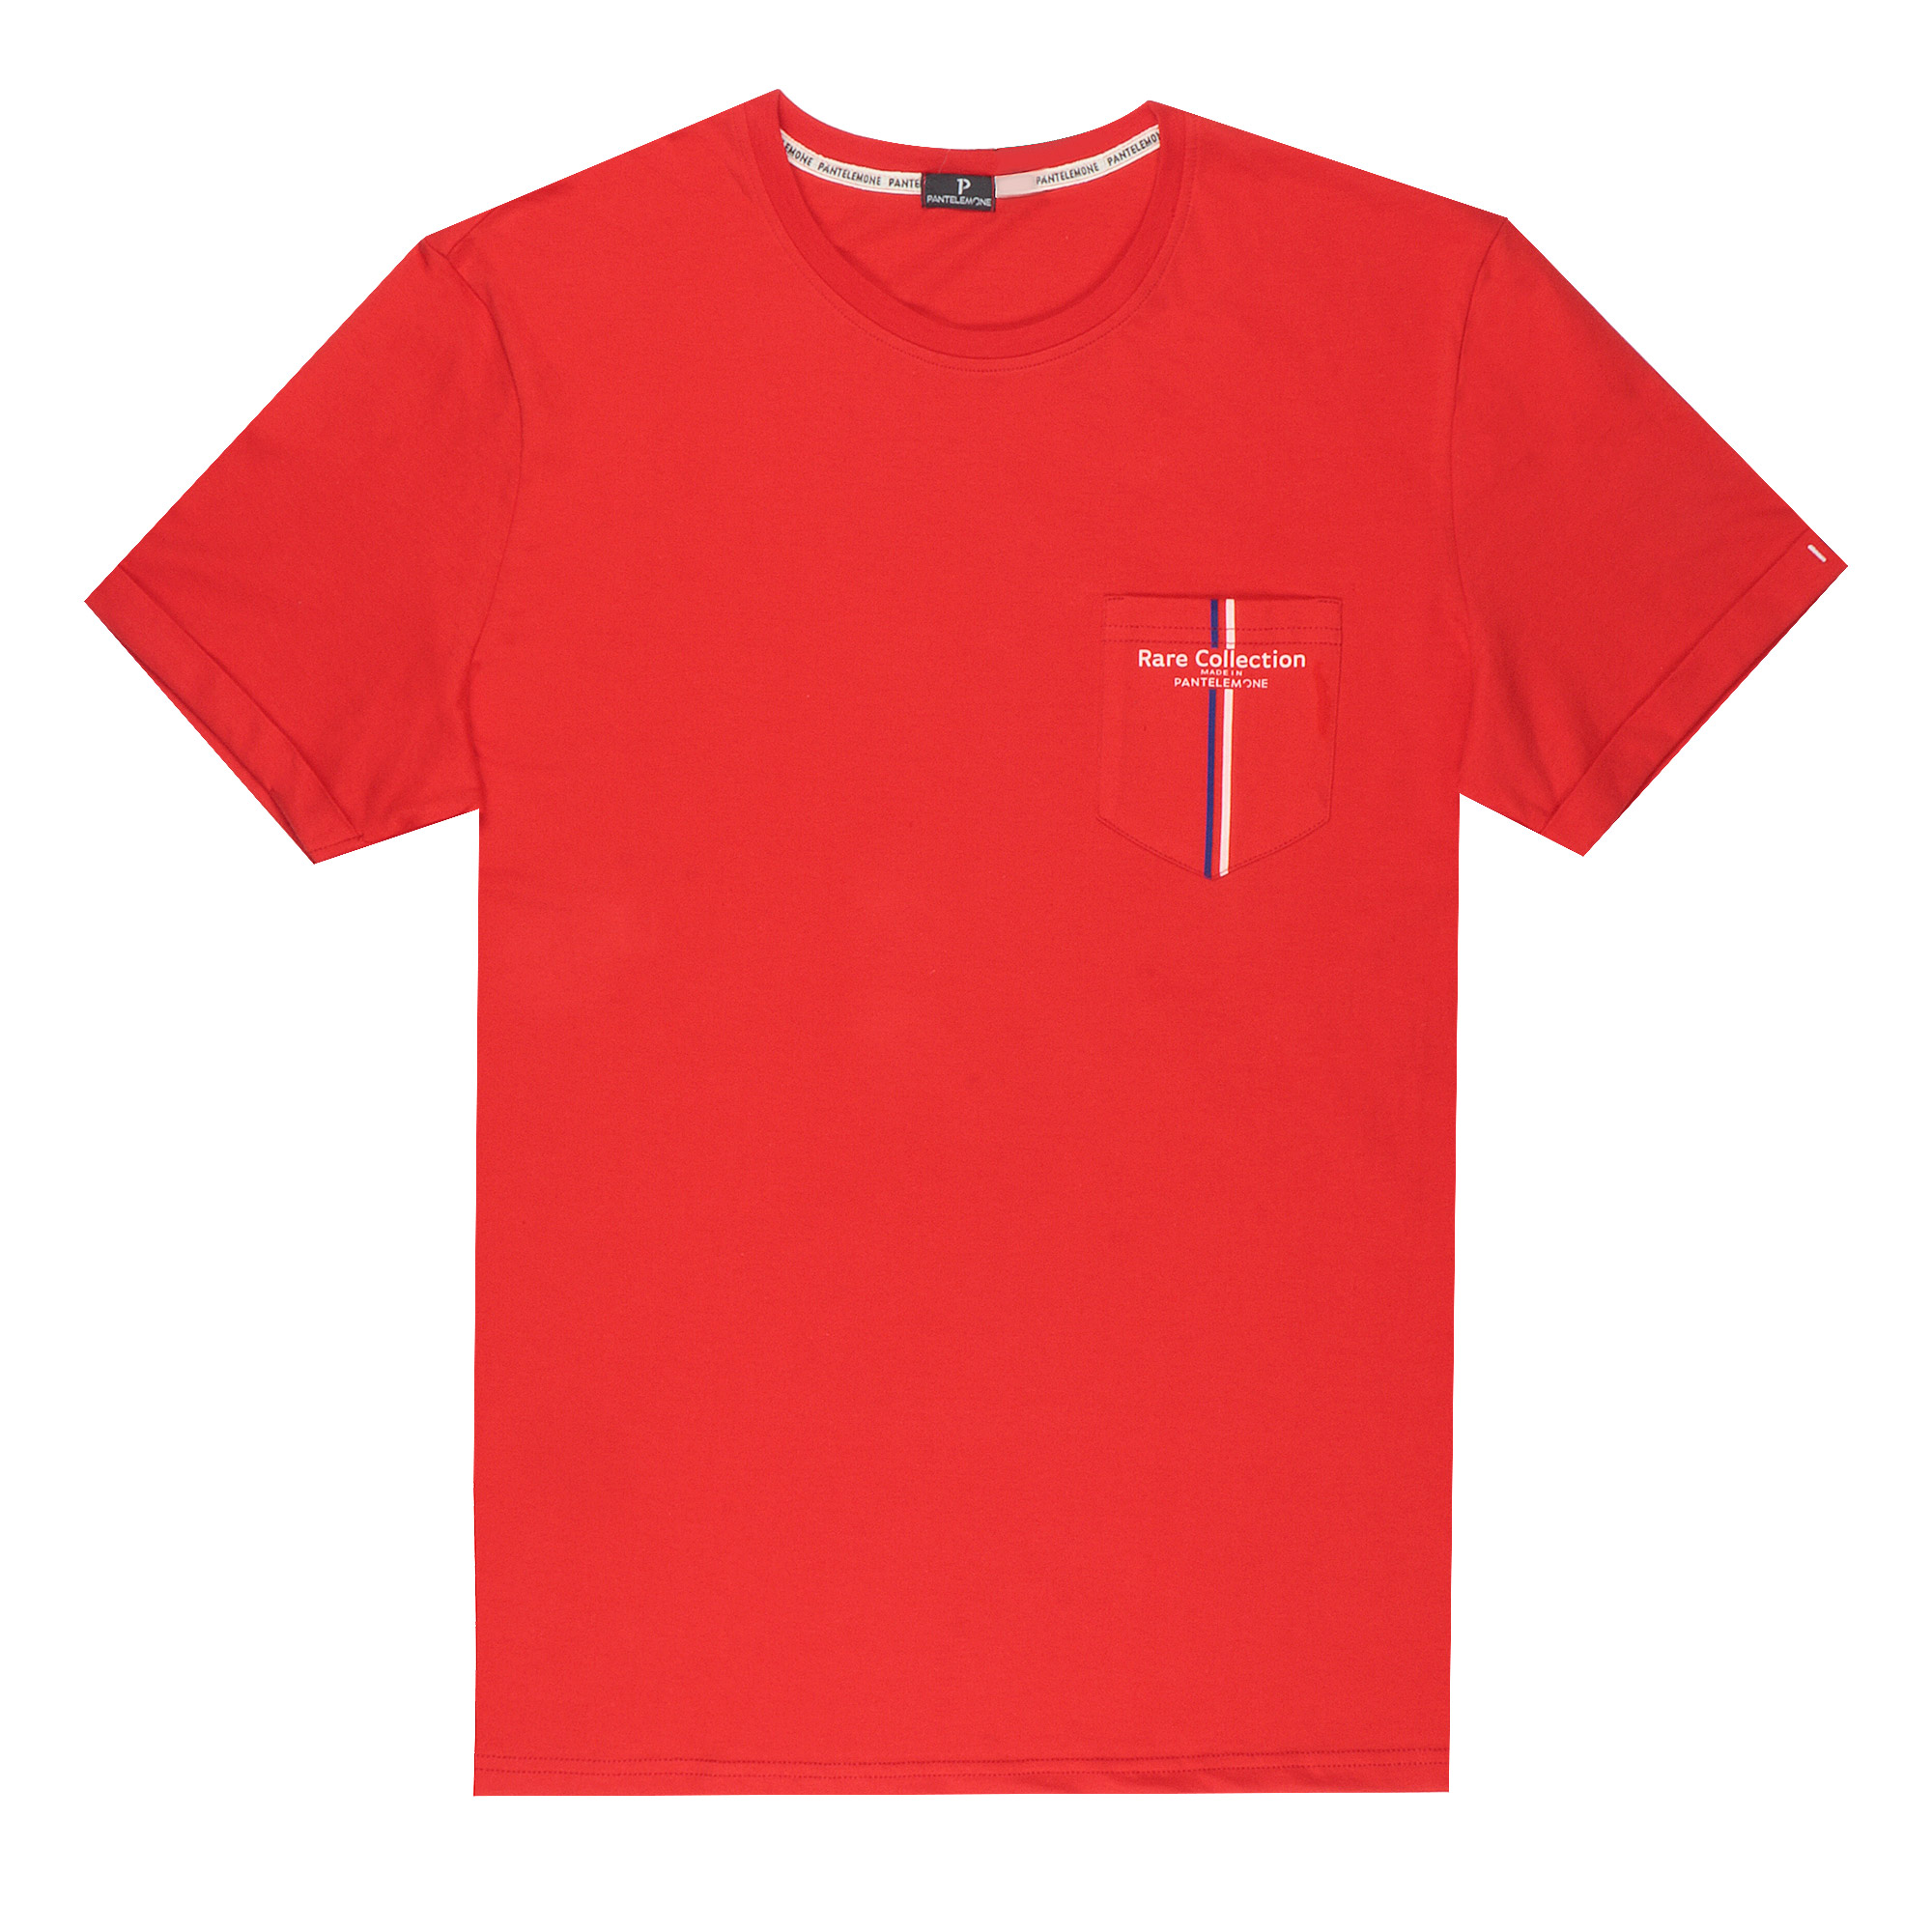 Мужская футболка Pantelemone MF-898 красная 50, цвет красный, размер 50 - фото 1